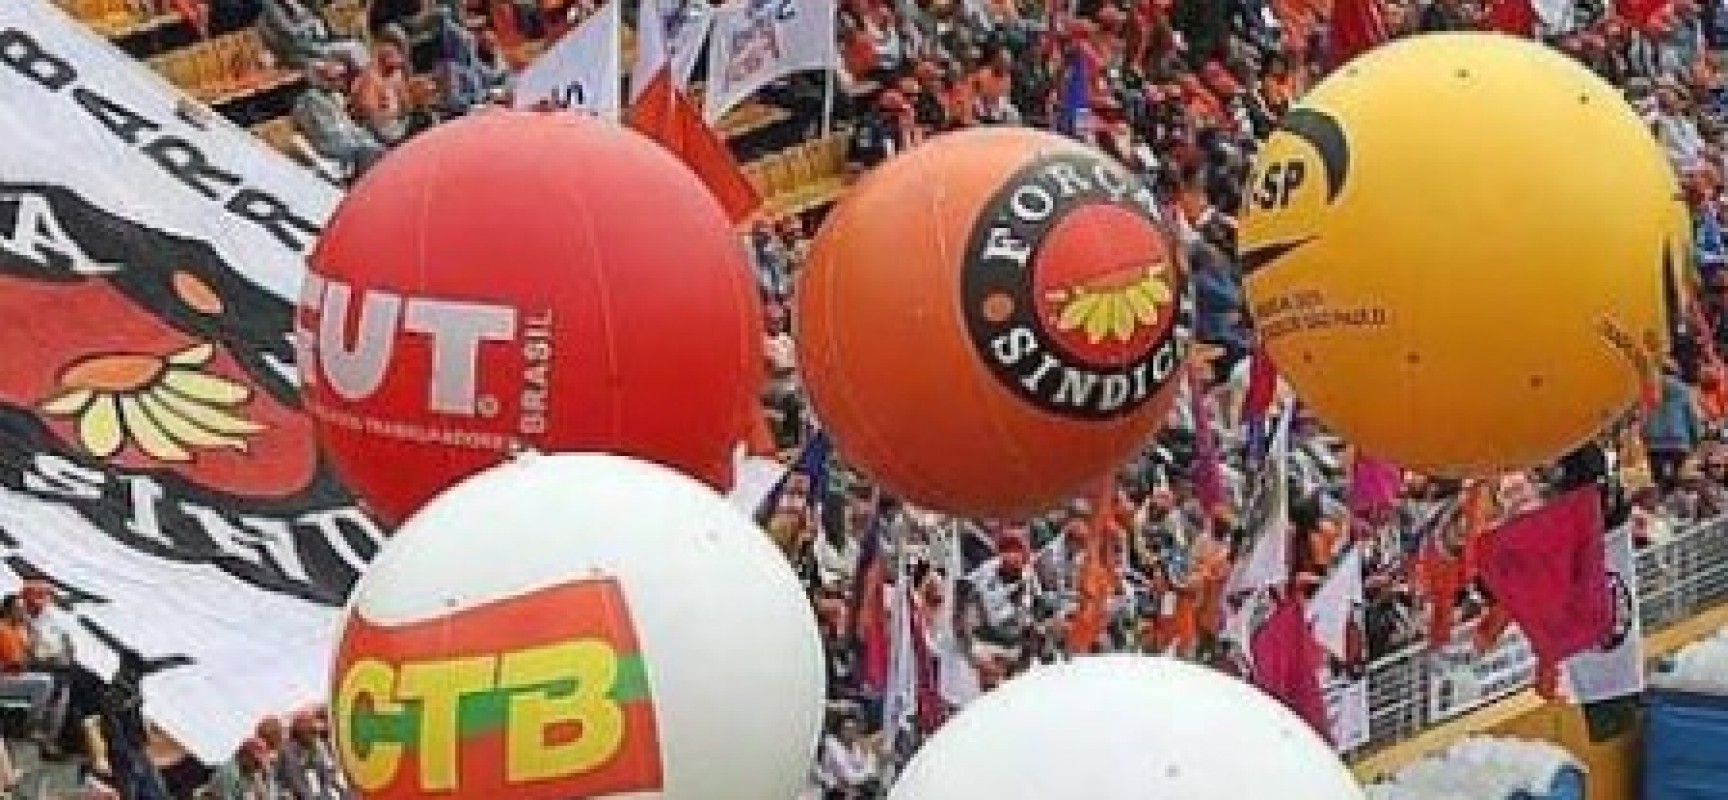 Centrais defendem contribuição sindical opcional decidida em assembleias